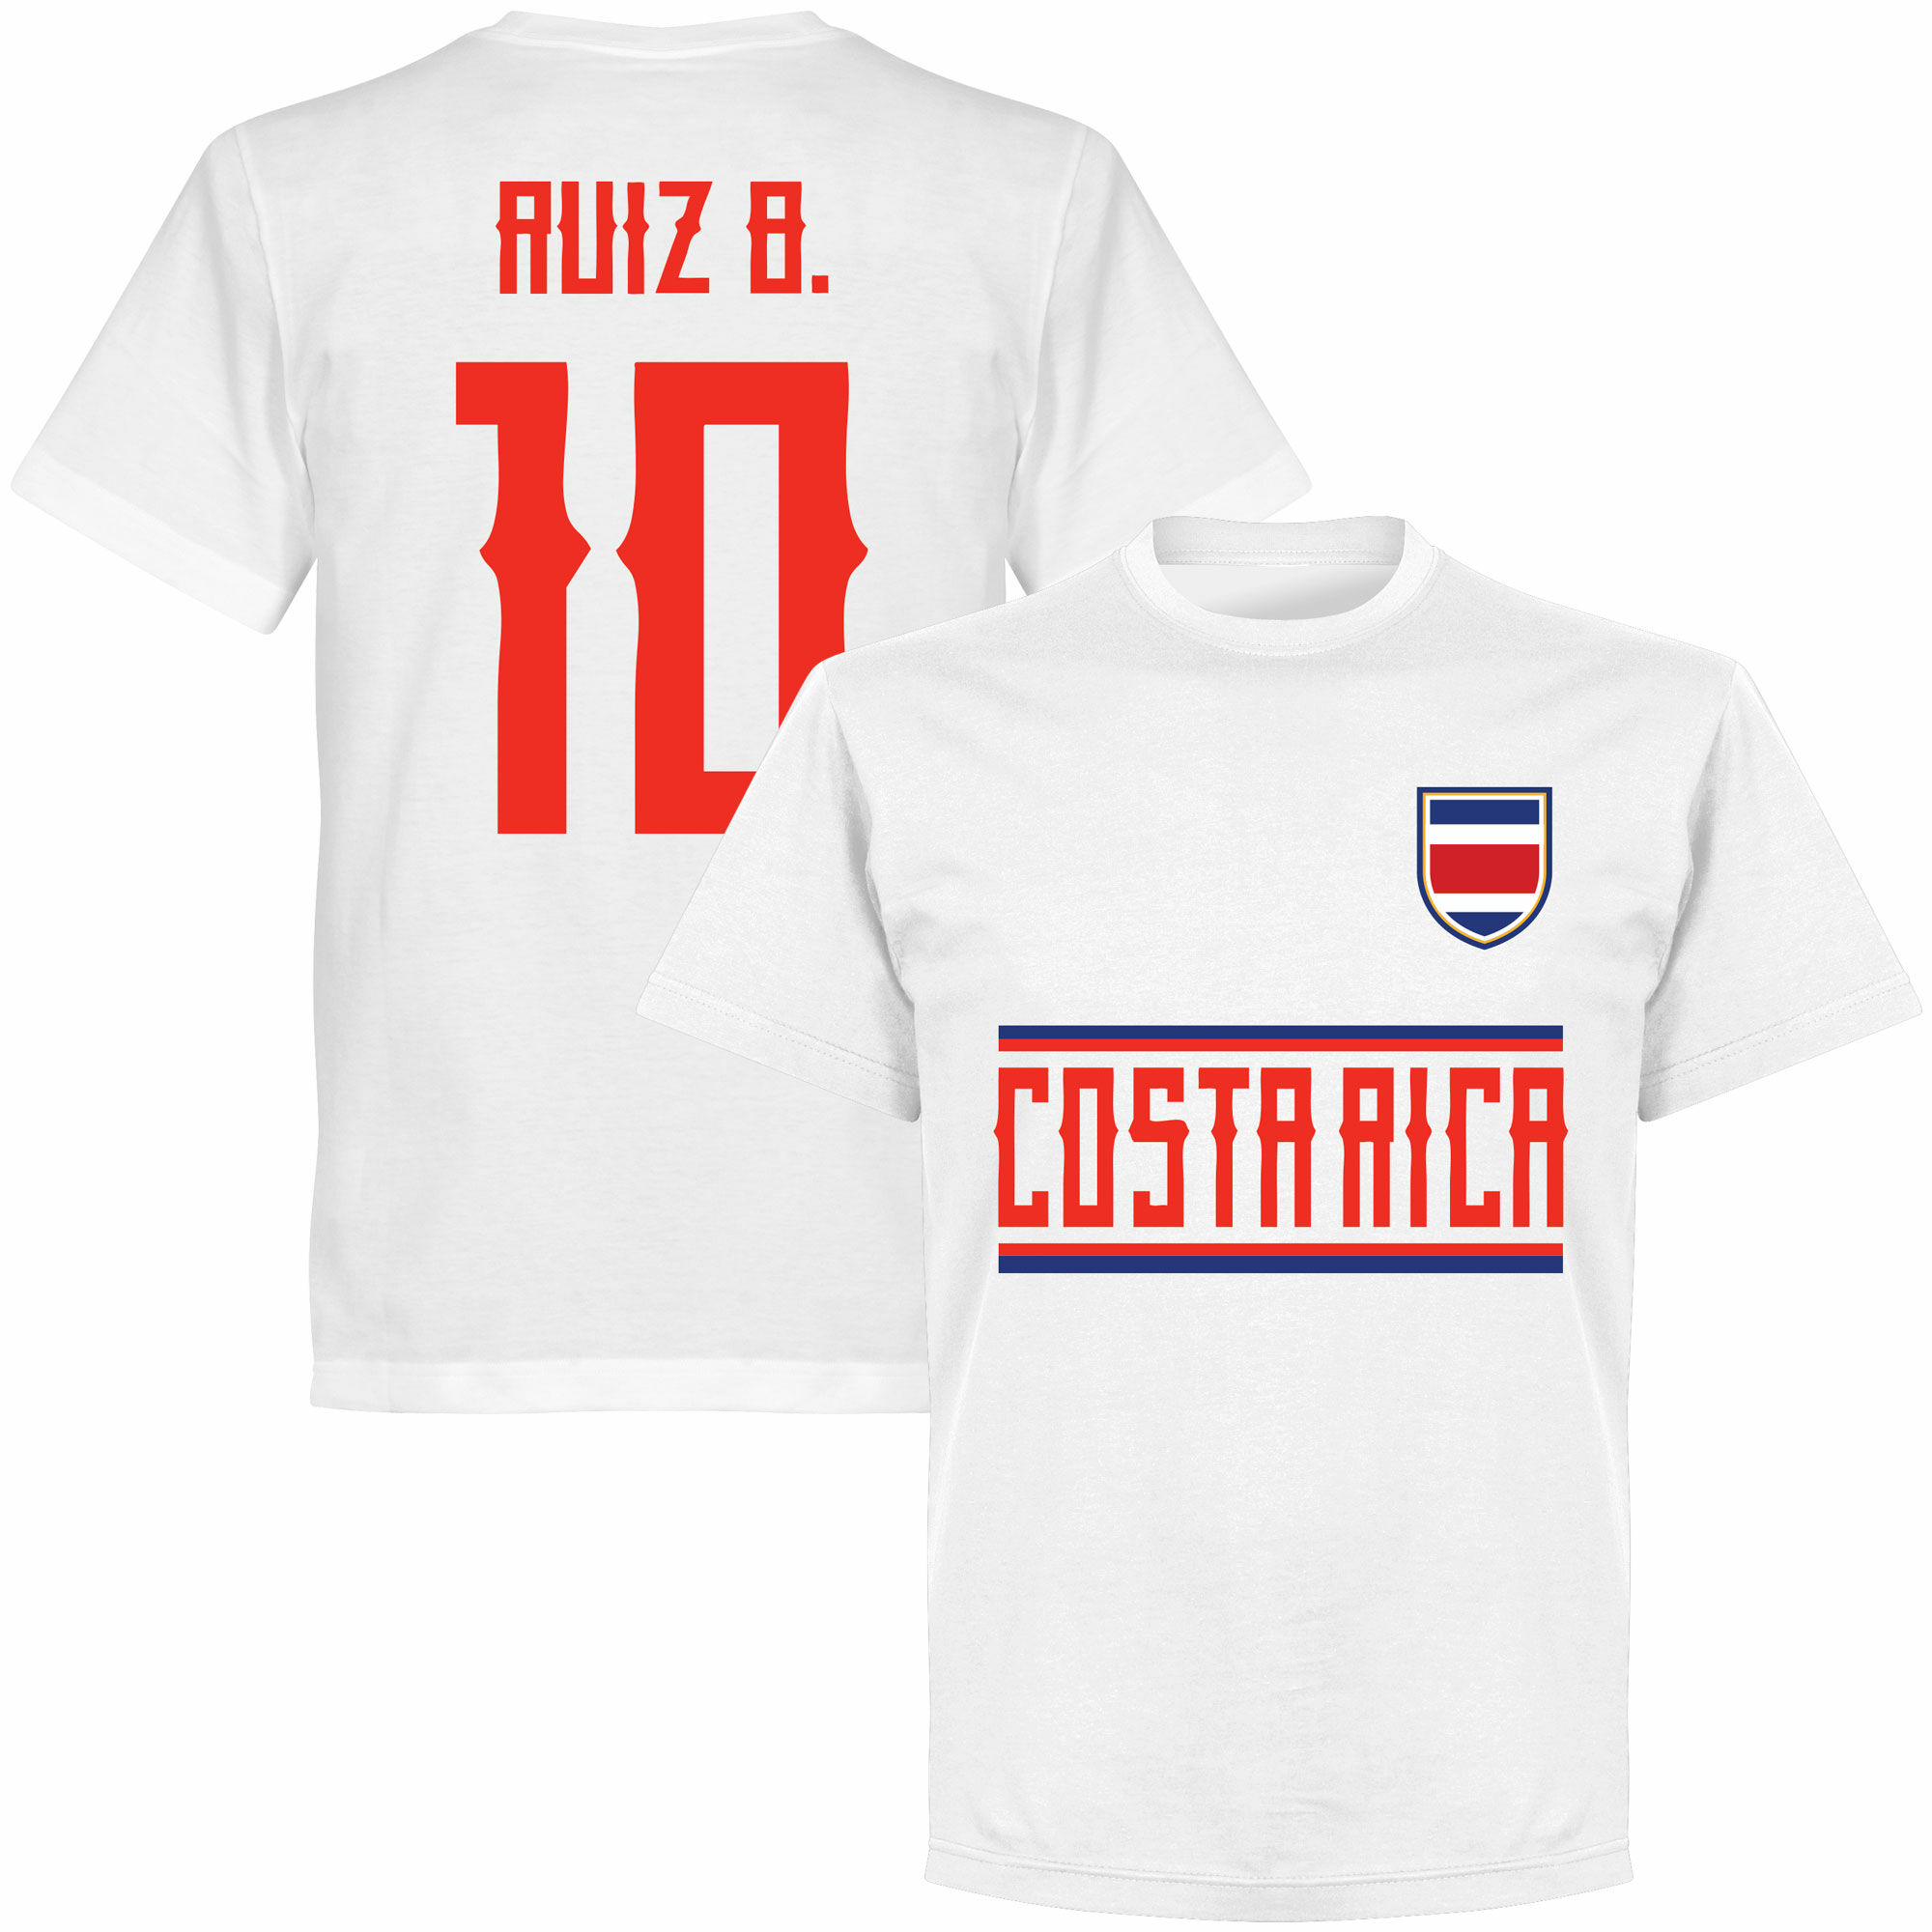 Kostarika - Tričko - bílé, číslo 10, Bryan Ruiz